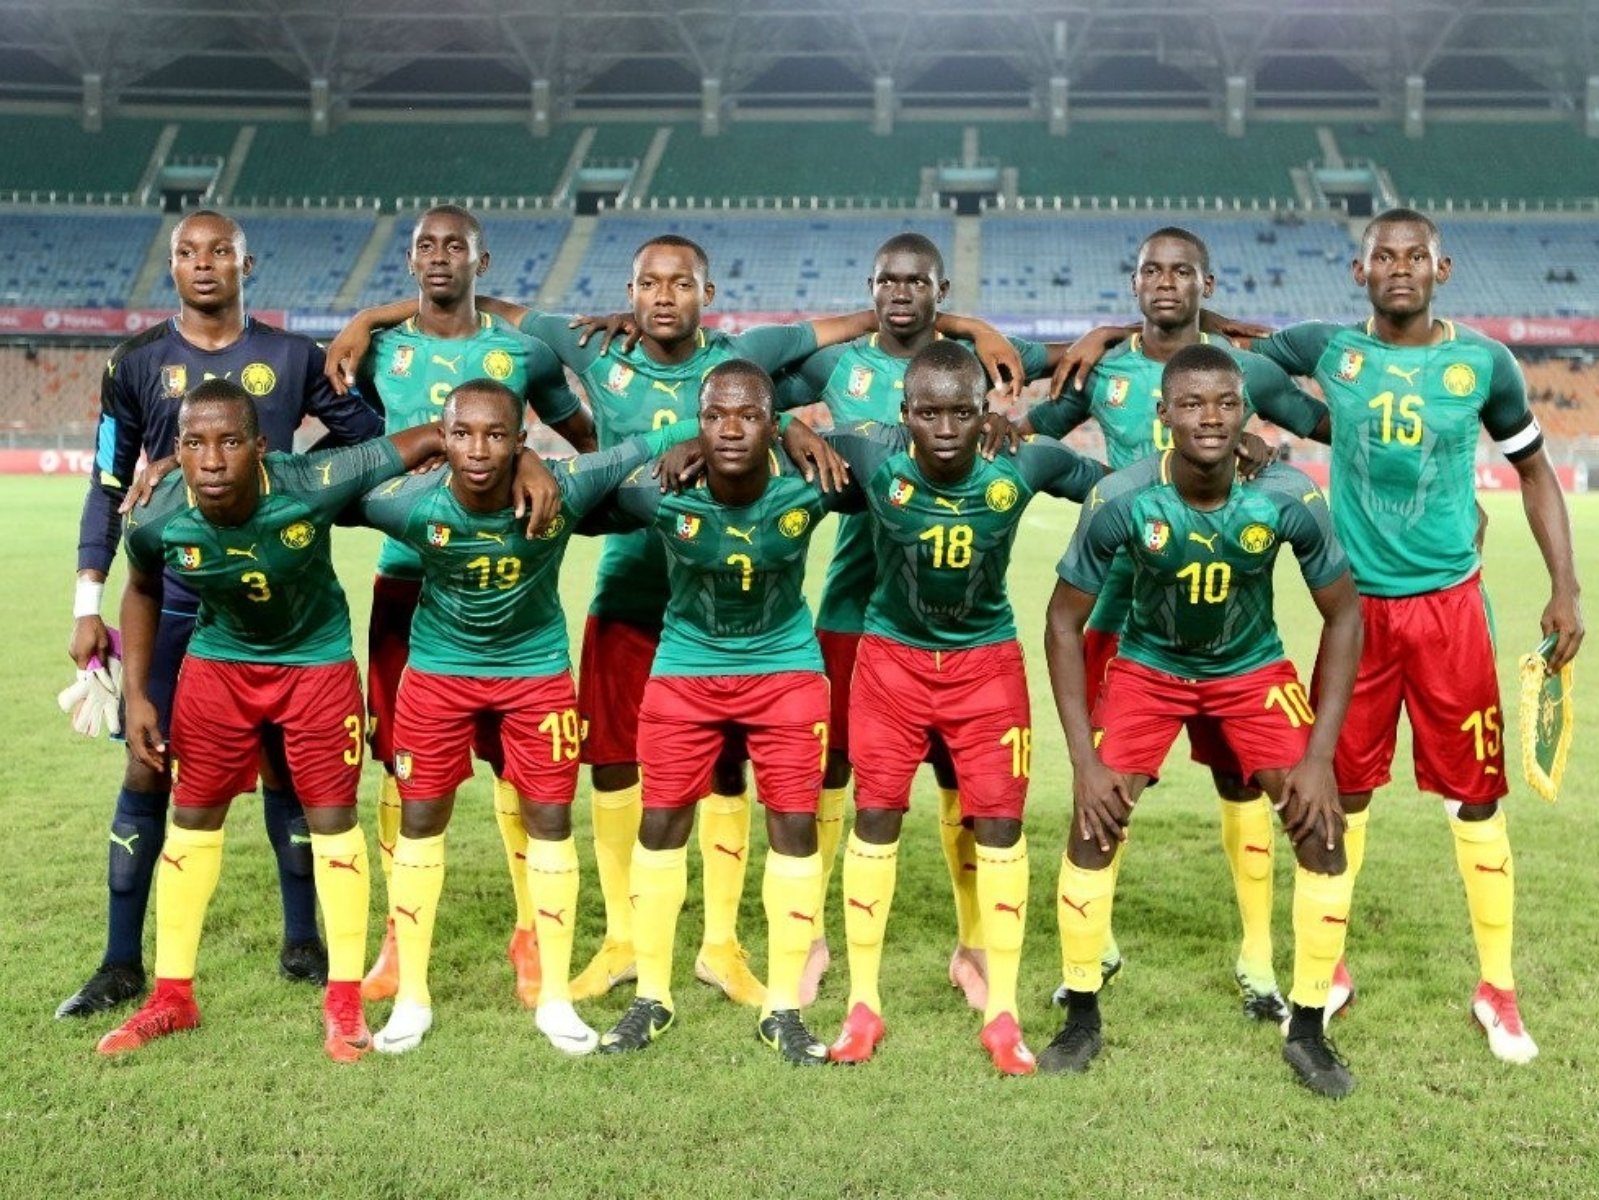 喀麥隆 U17 足球國家隊被抓去檢測，高達 7 成以上球員「謊報年齡」遭除名！